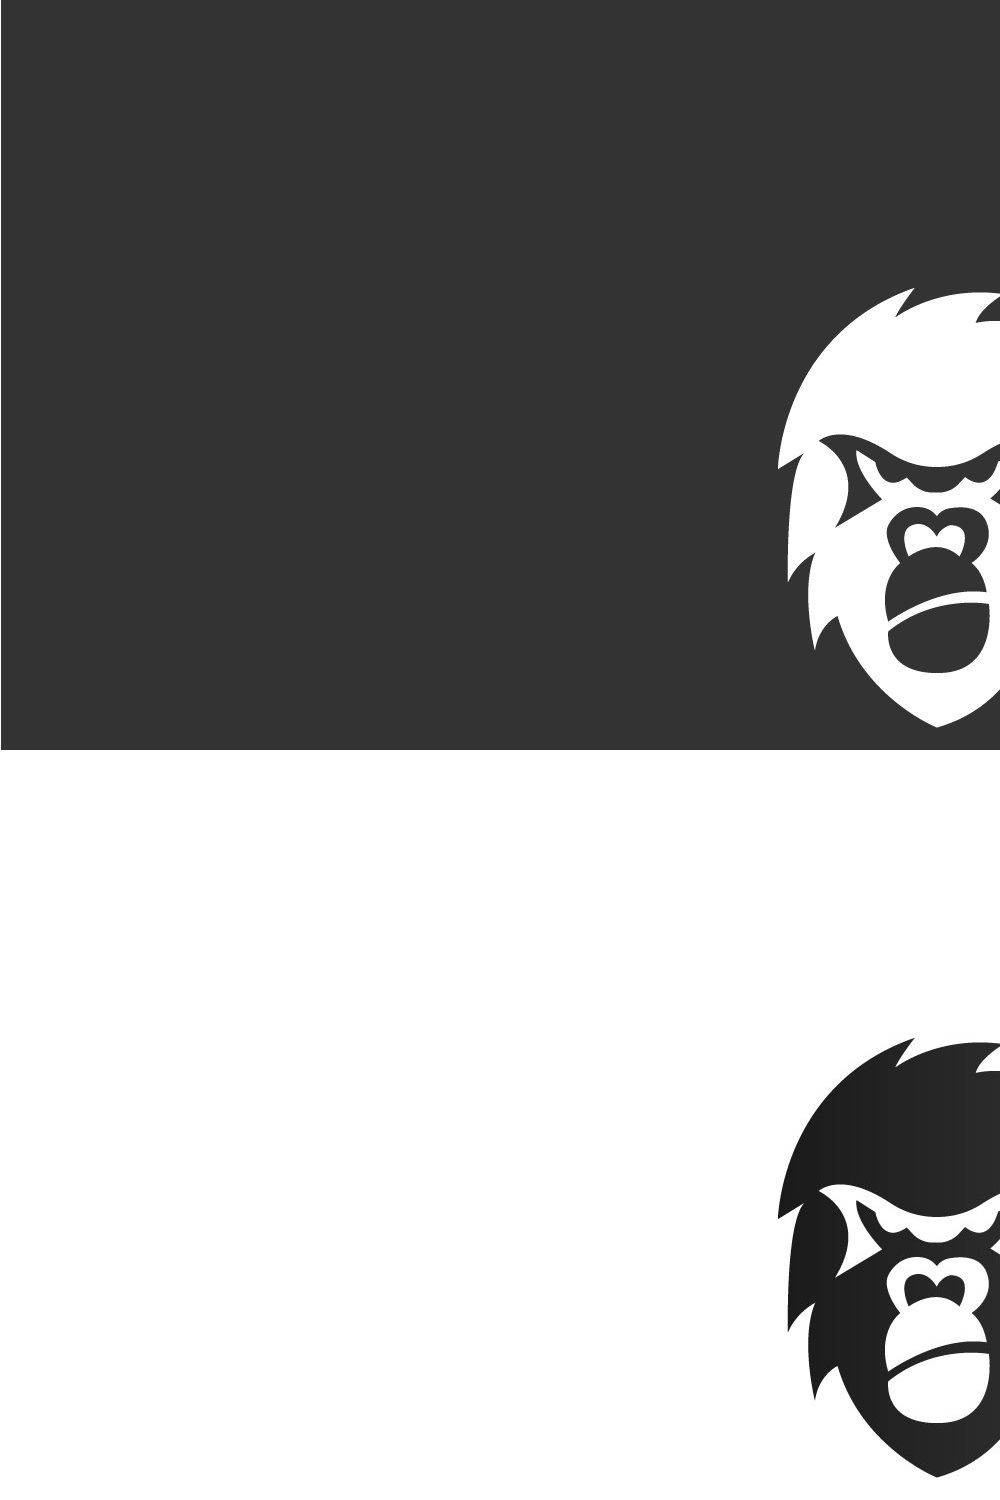 Monkey logo pinterest preview image.